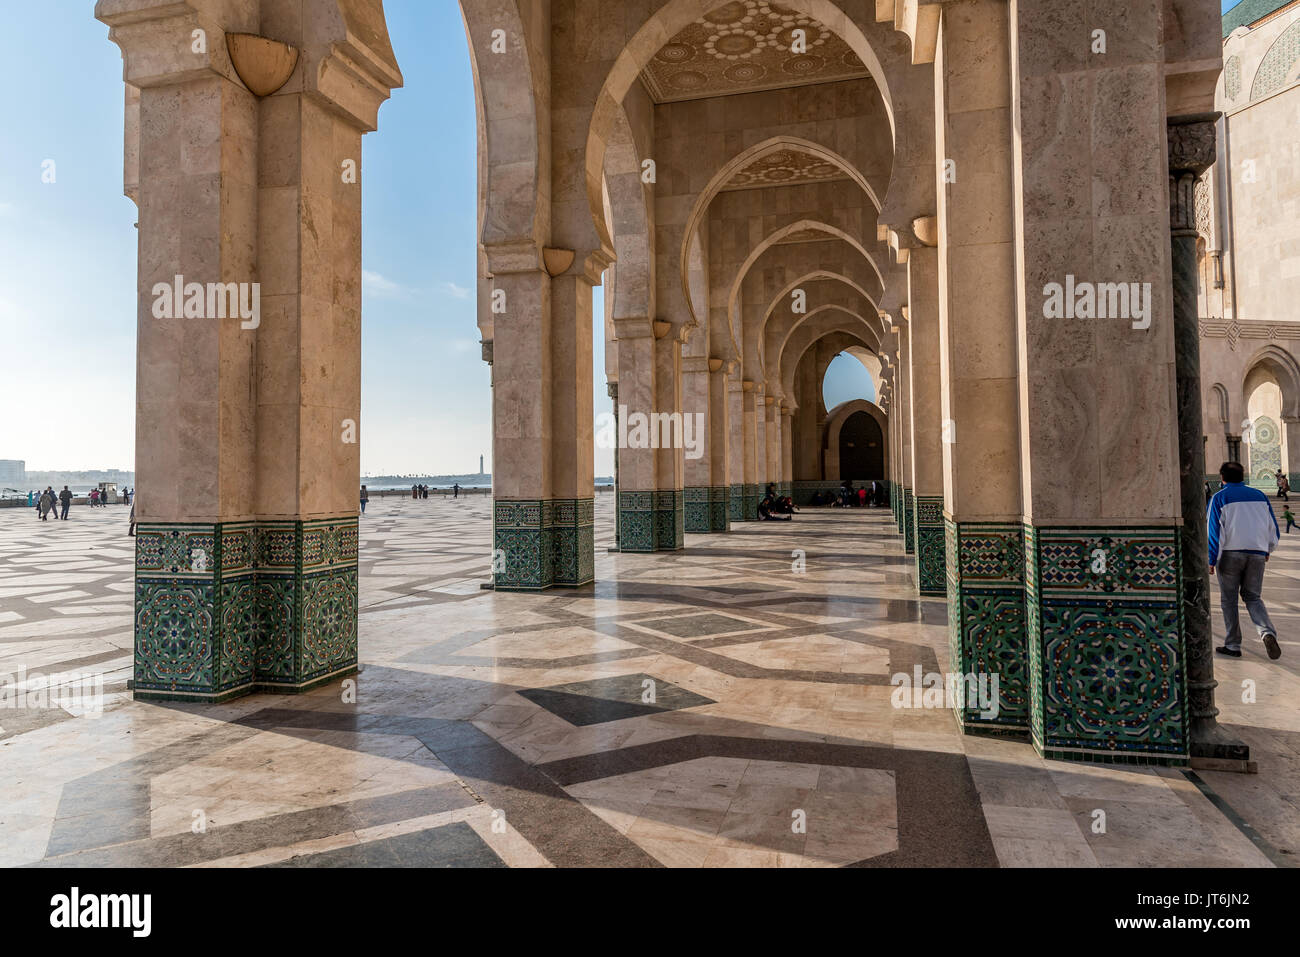 Arcade avec décoration islamique, Mosquée Hassan II à Casablanca, Maroc Banque D'Images